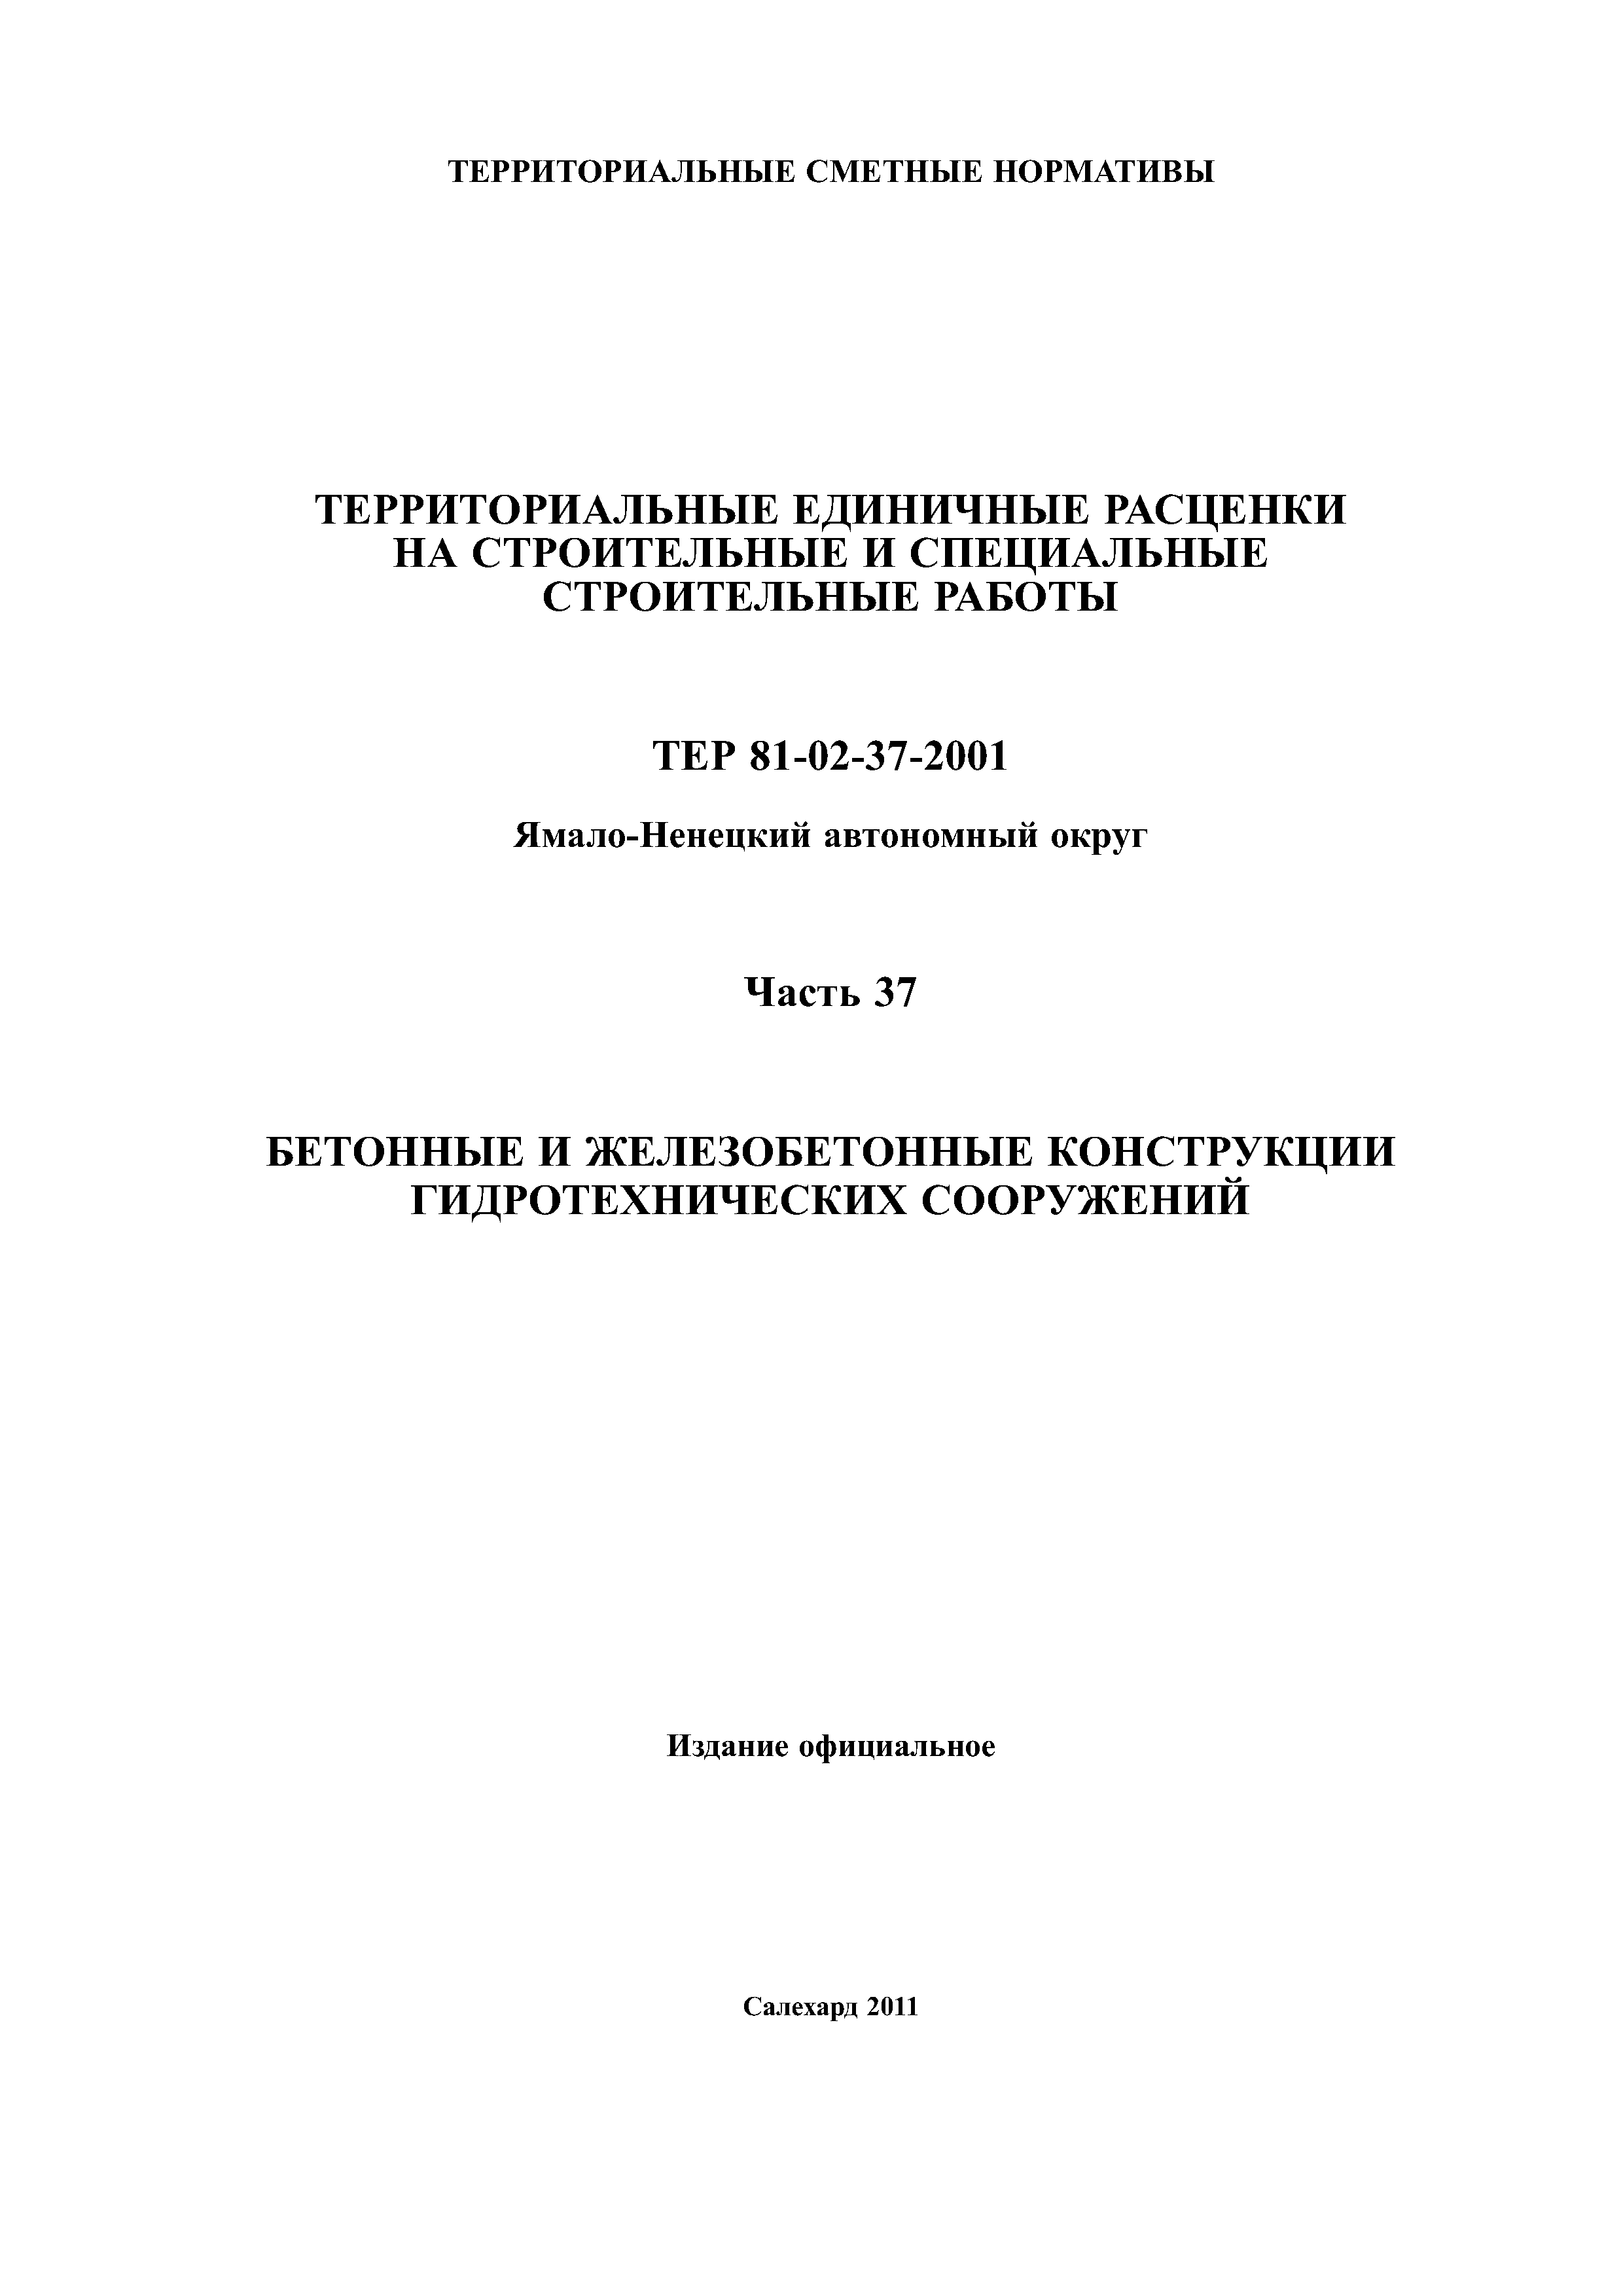 ТЕР Ямало-Ненецкий автономный округ 37-2001